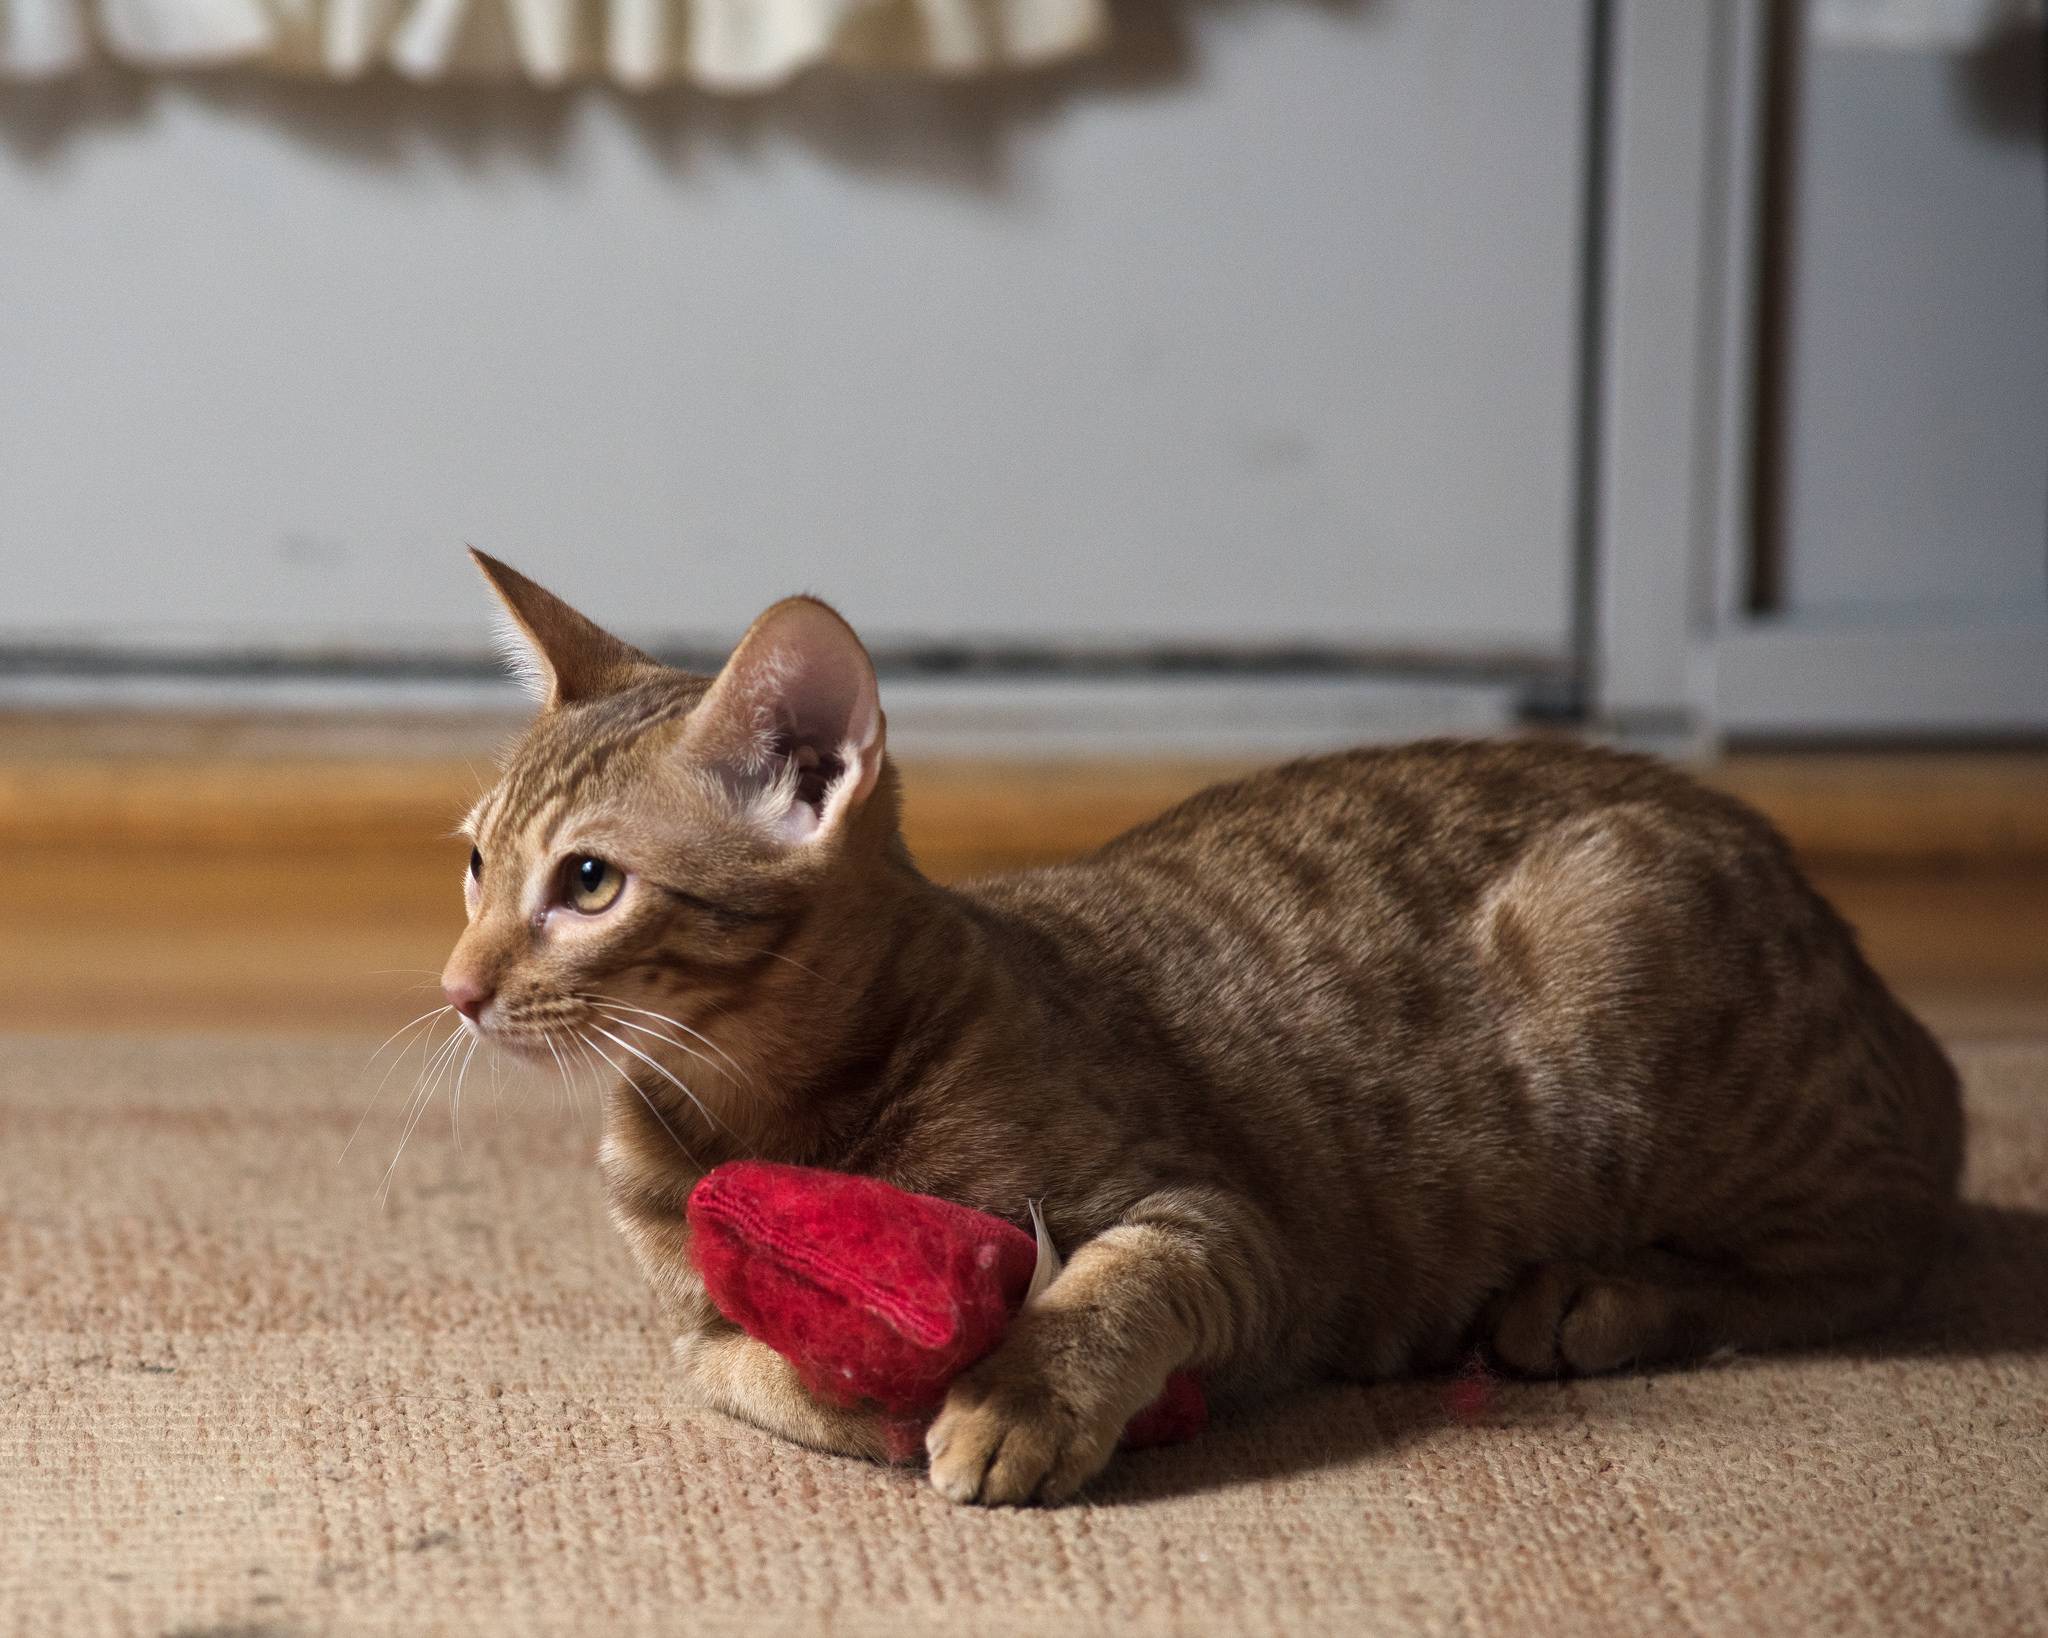 Кошка оцикет: фото кошки, описание породы, уход, цена, рекомендации, плюсы и минусы породы